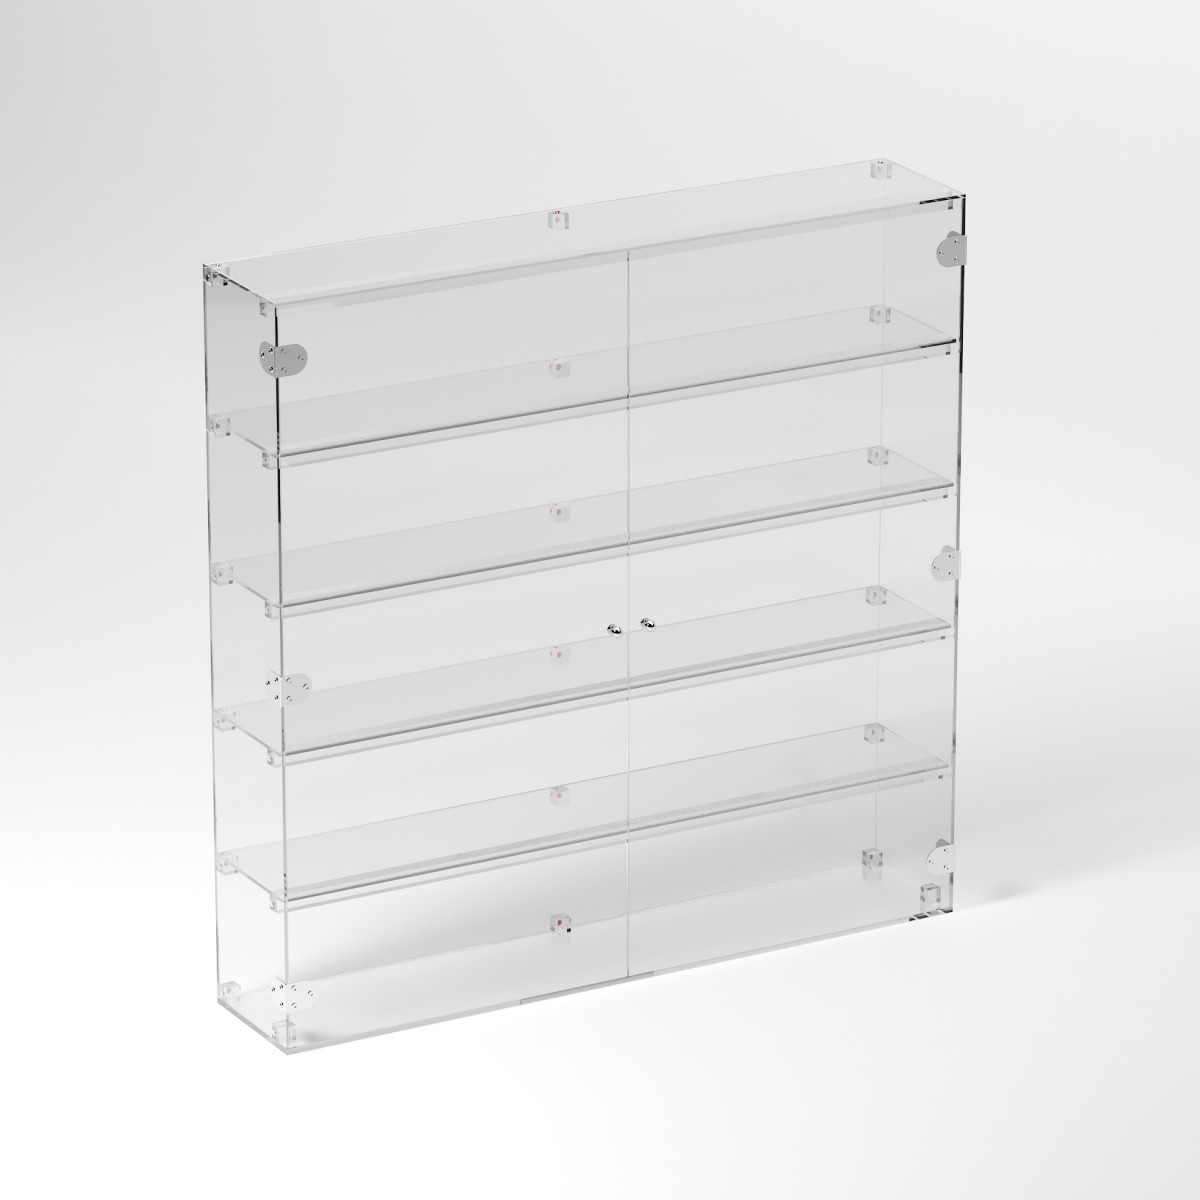 E-913 VET - Ampia vetrina espositiva in plexiglass trasparente a 5 ripiani - Misure: 100 x 20 x h100 cm